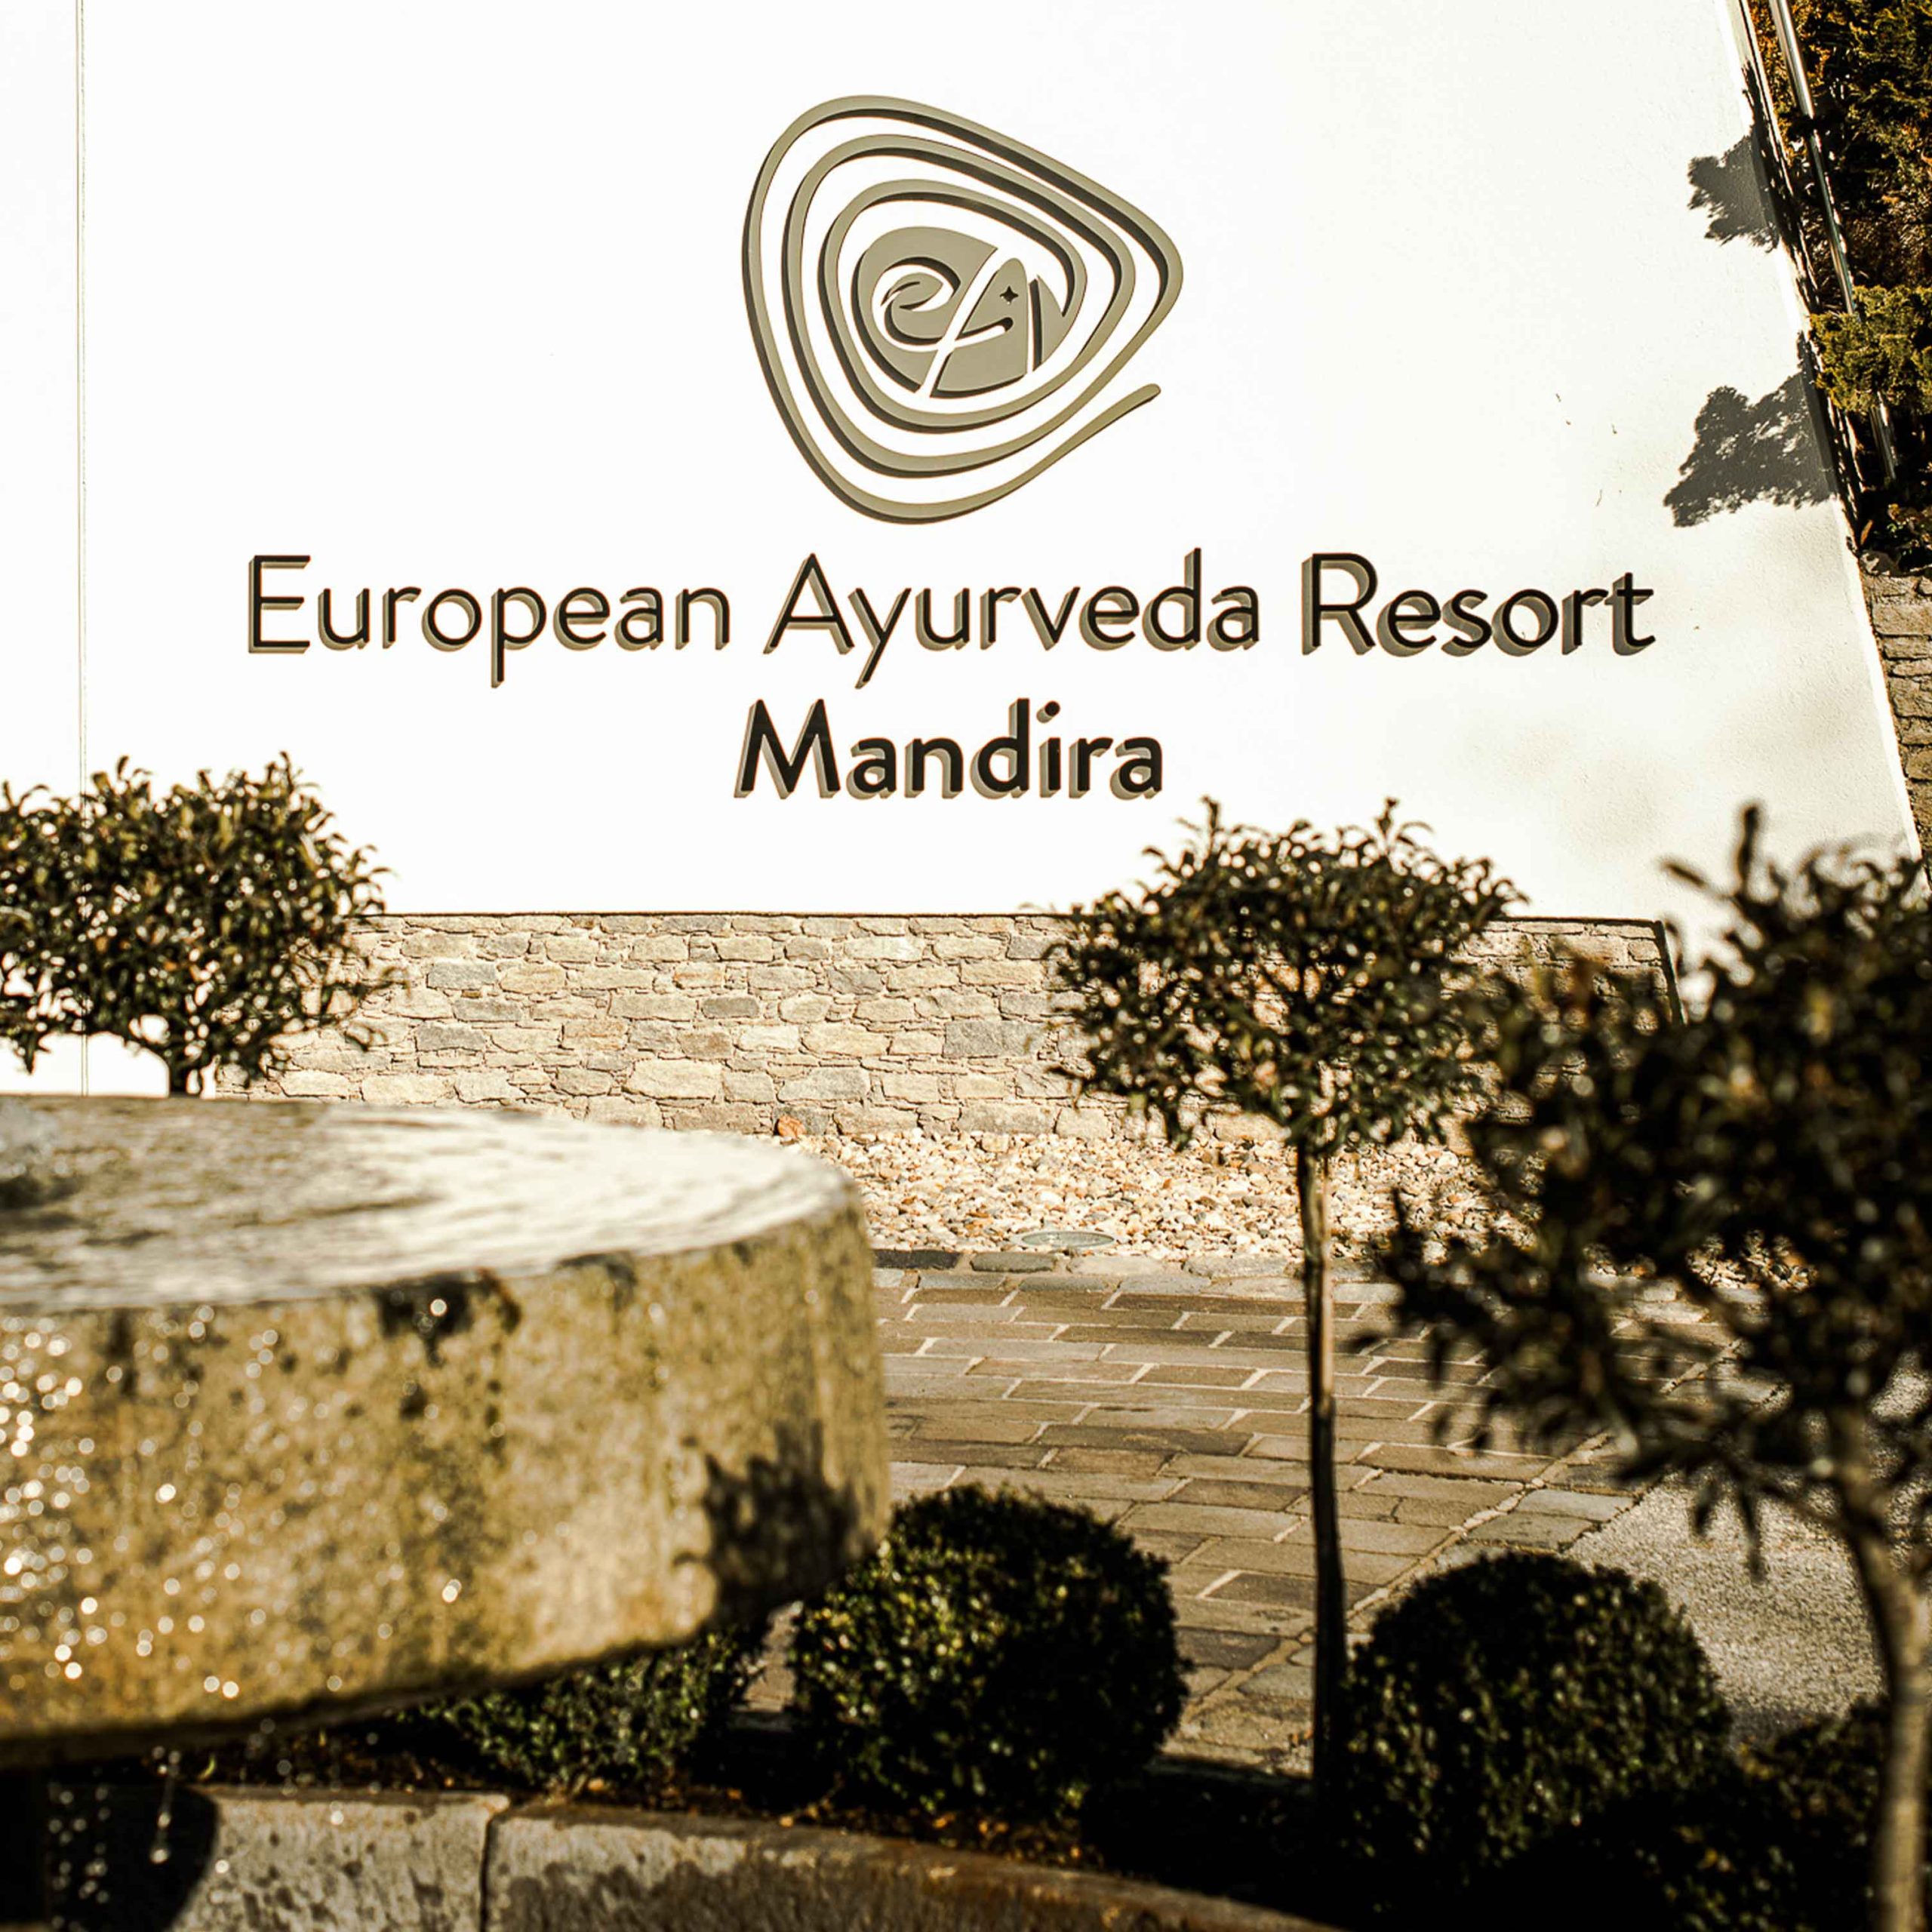 Bild zeigt Außenbereich mit Logo des Ayurveda Resort Mandira in der Steiermark.